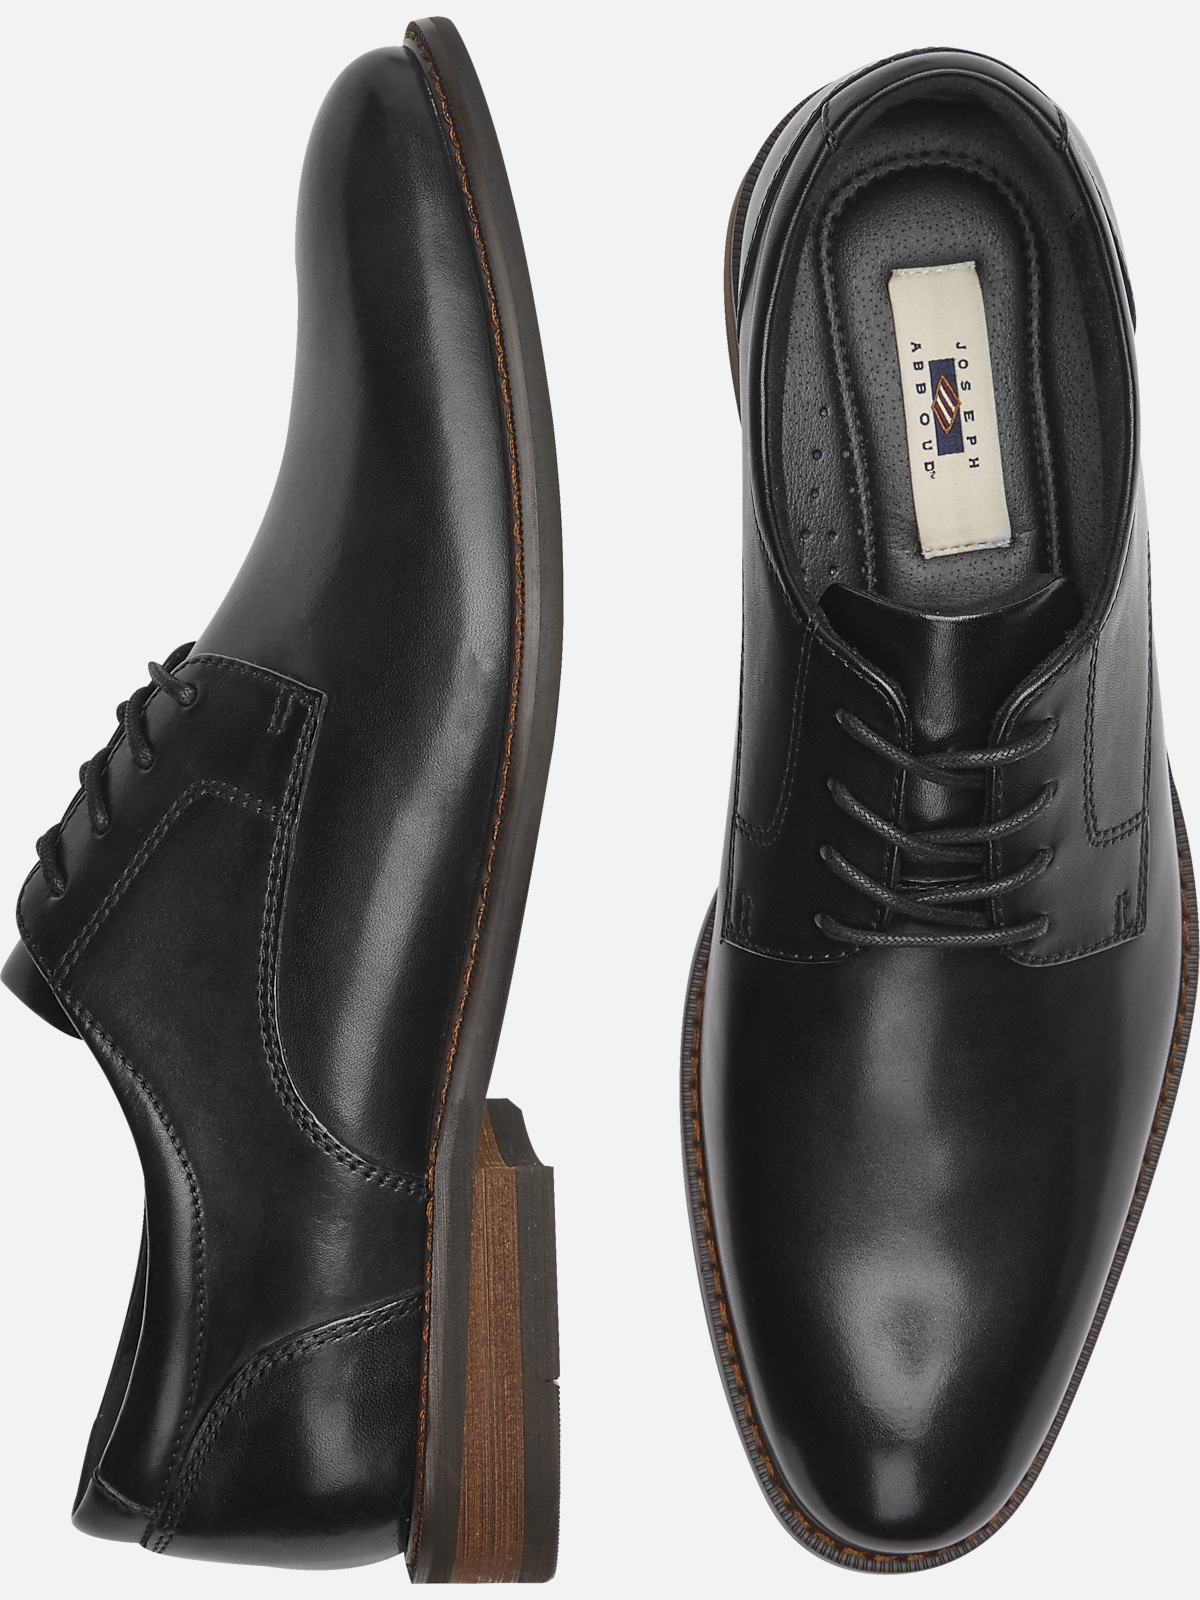 Joseph Abboud Cosmo Plain Toe Oxfords | Dress Shoes| Men's Wearhouse